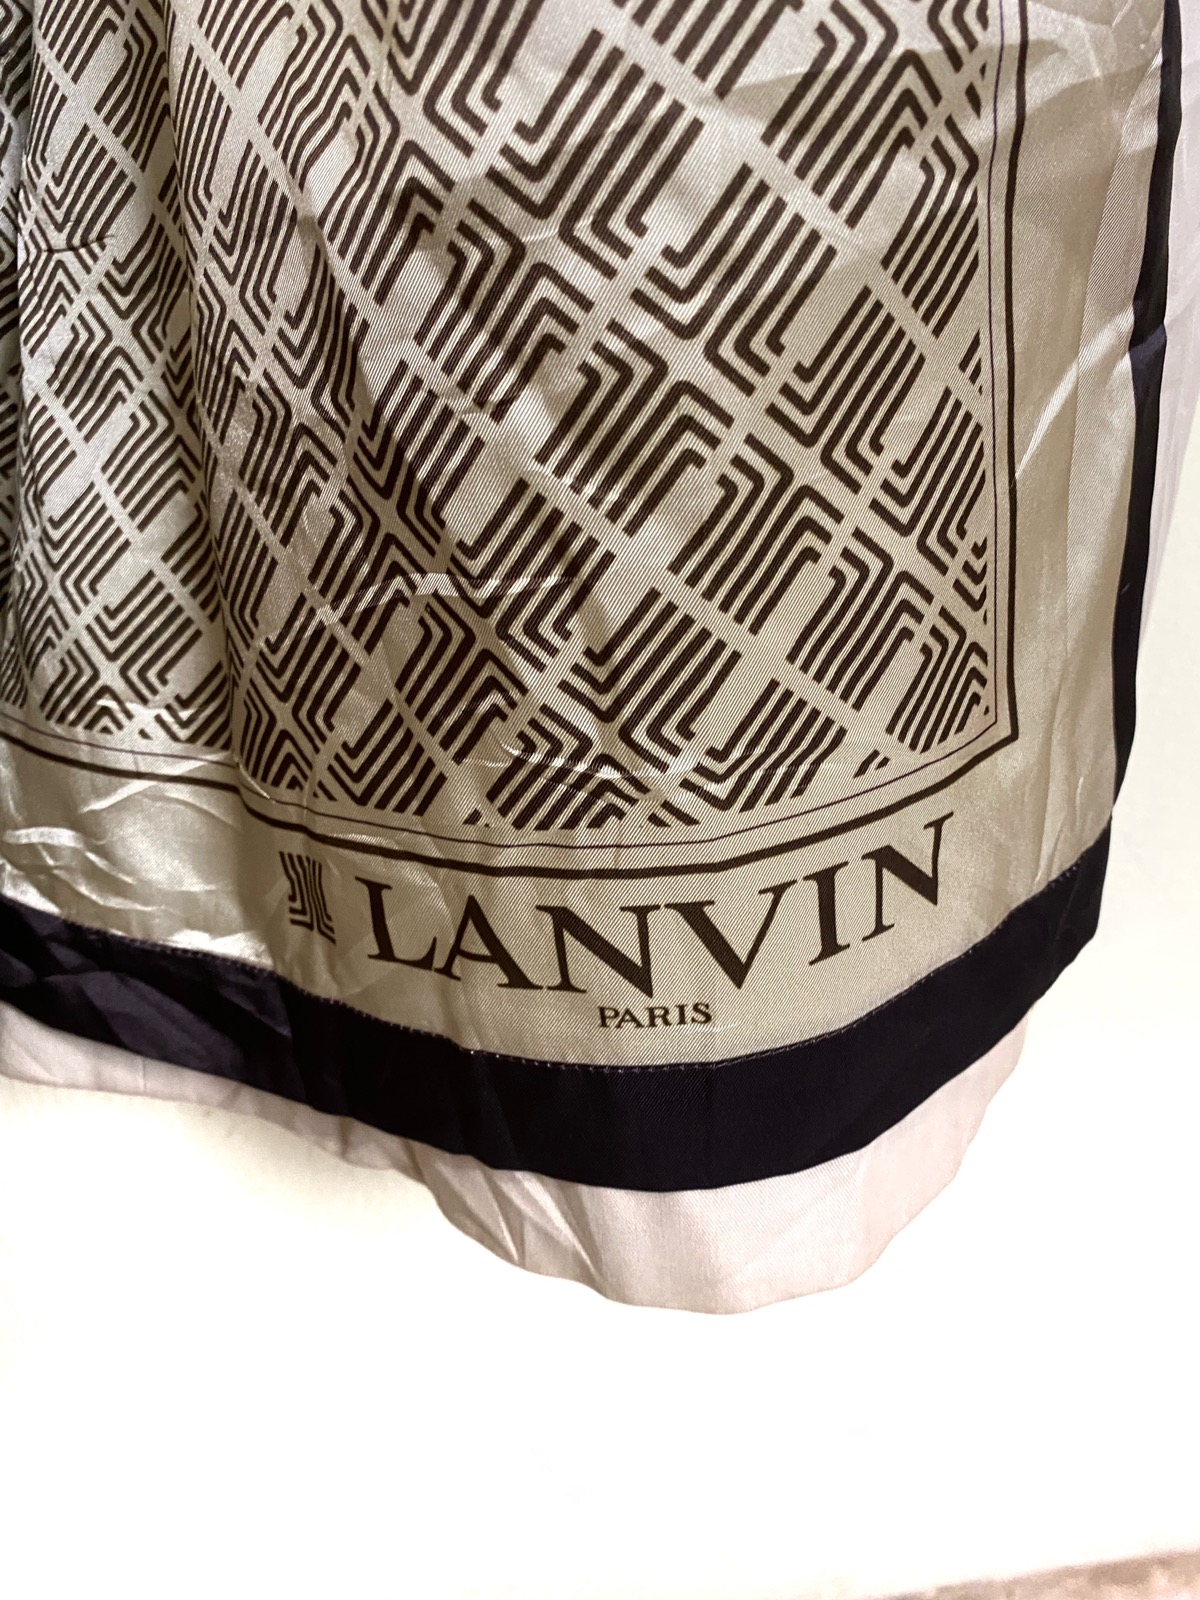 Vintage Lanvin Paris Monogram Trench Coat - 10